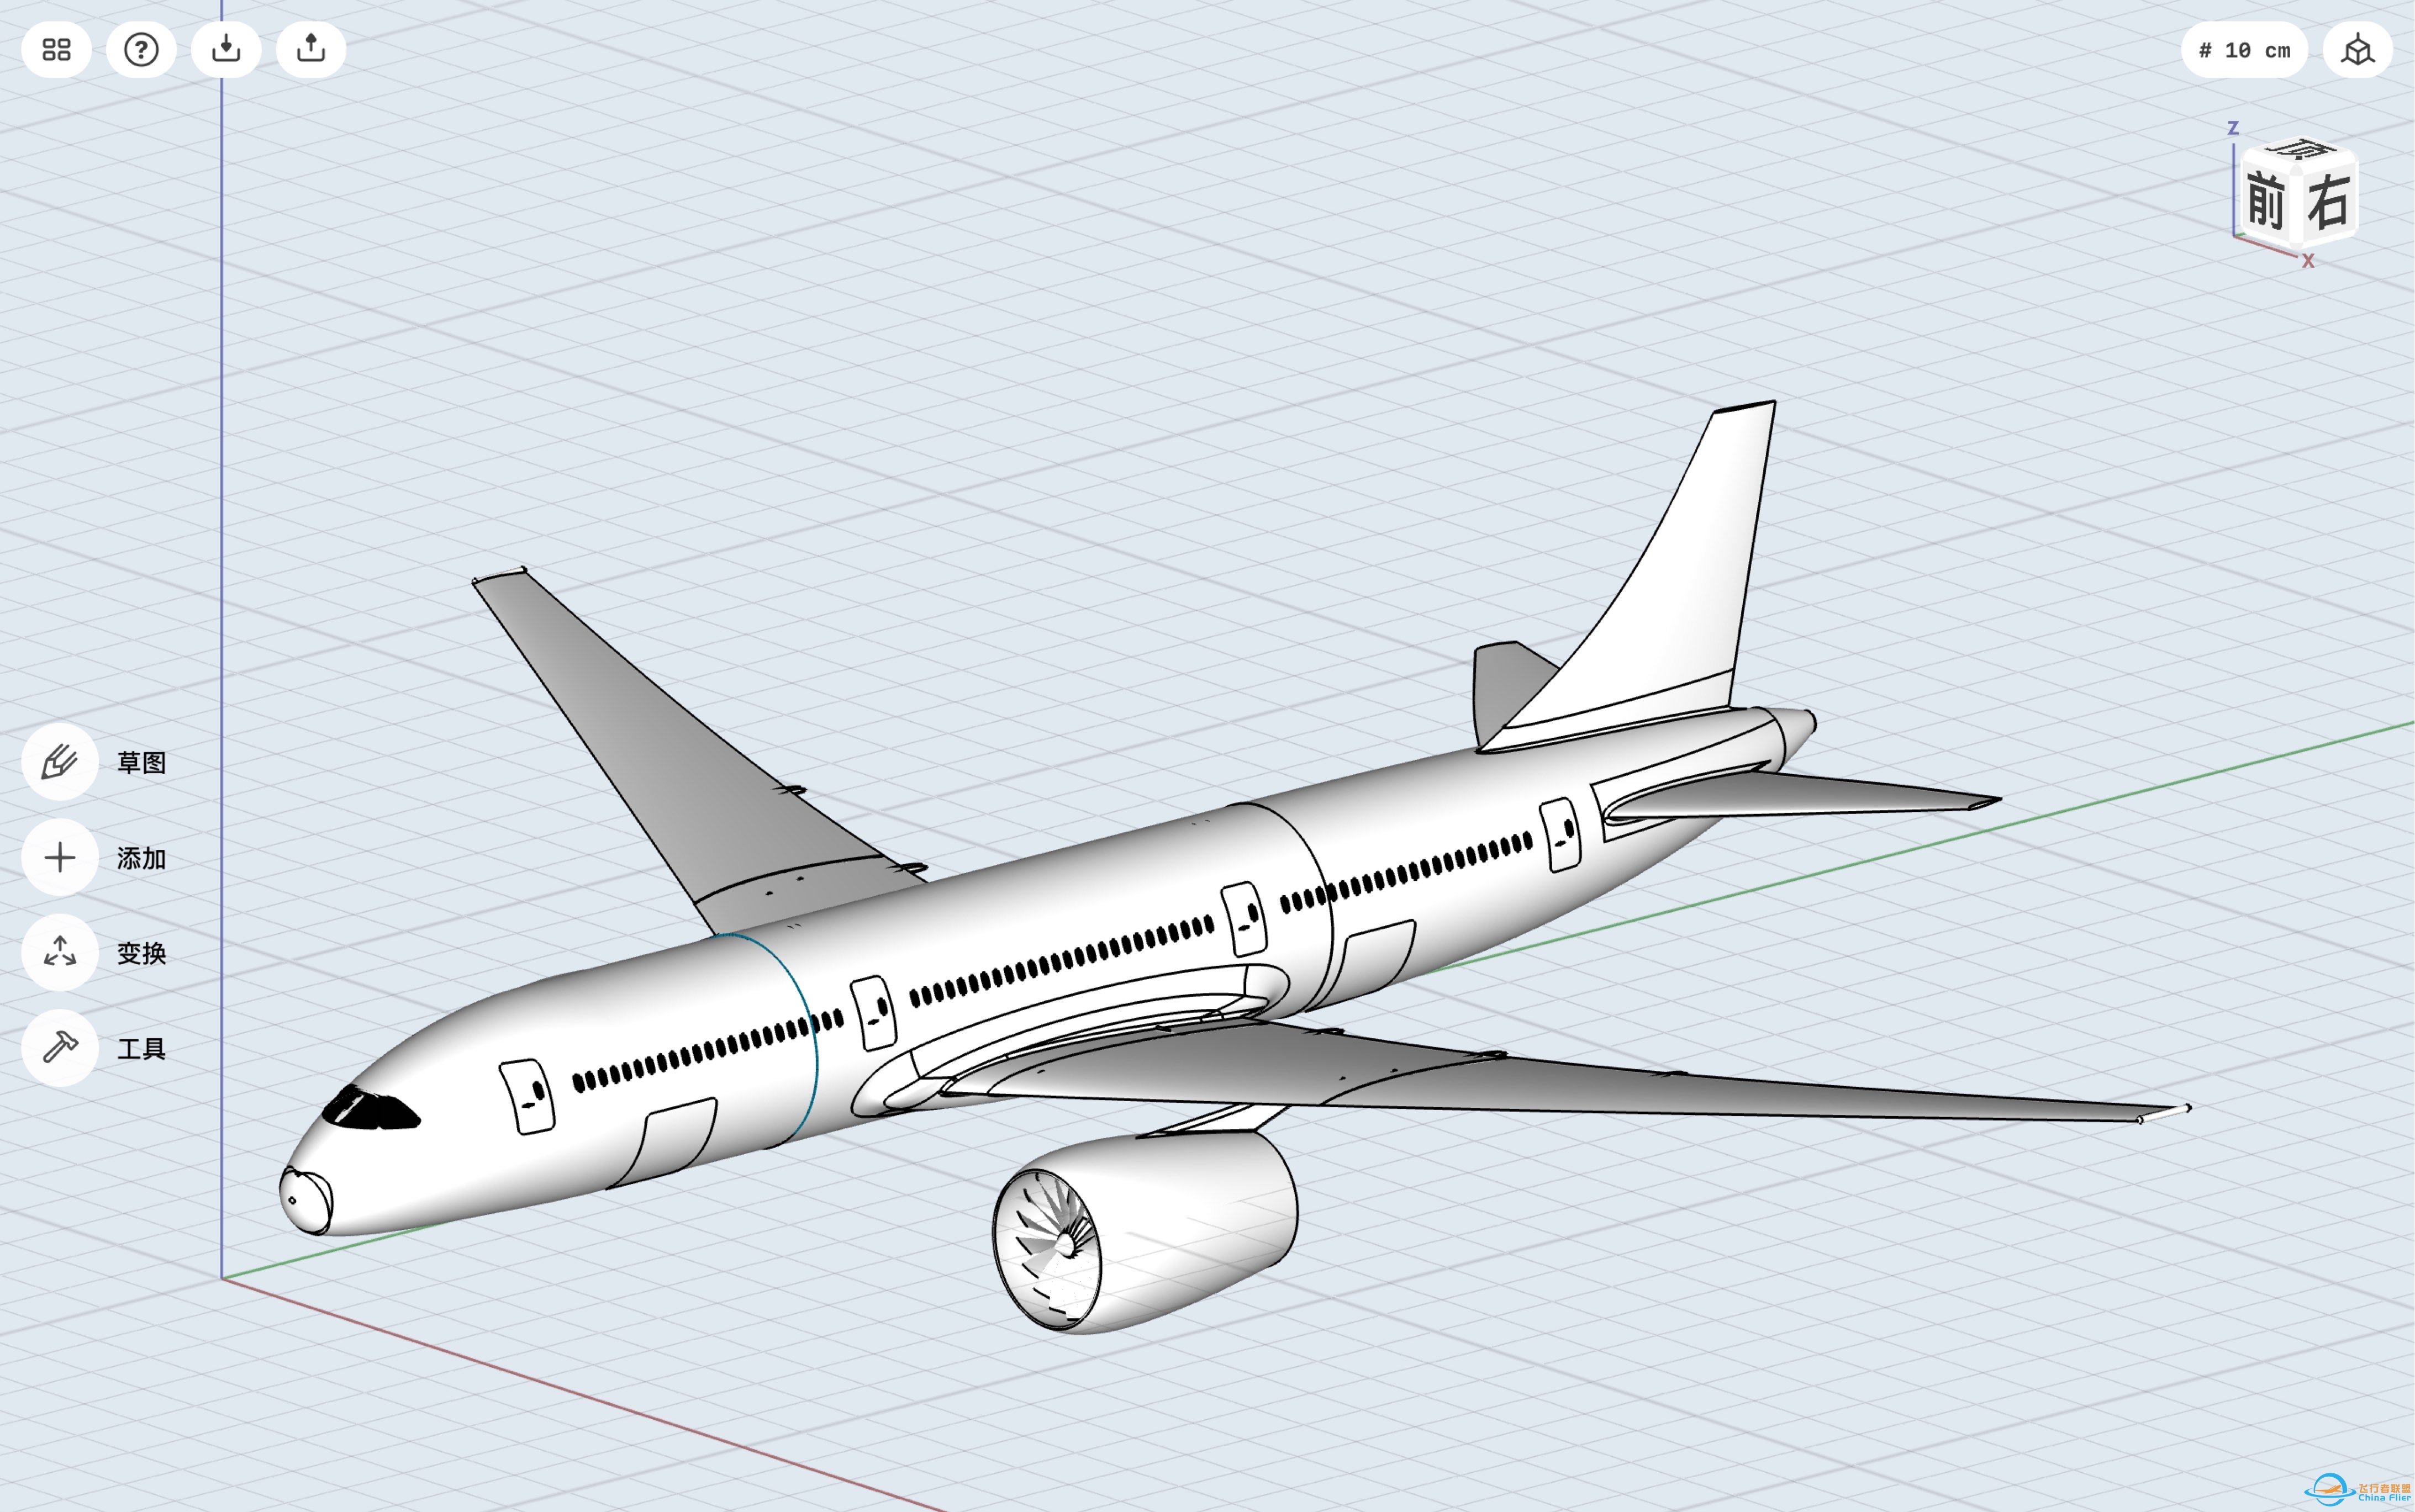 shaper 3D新飞机设计 part1-8568 